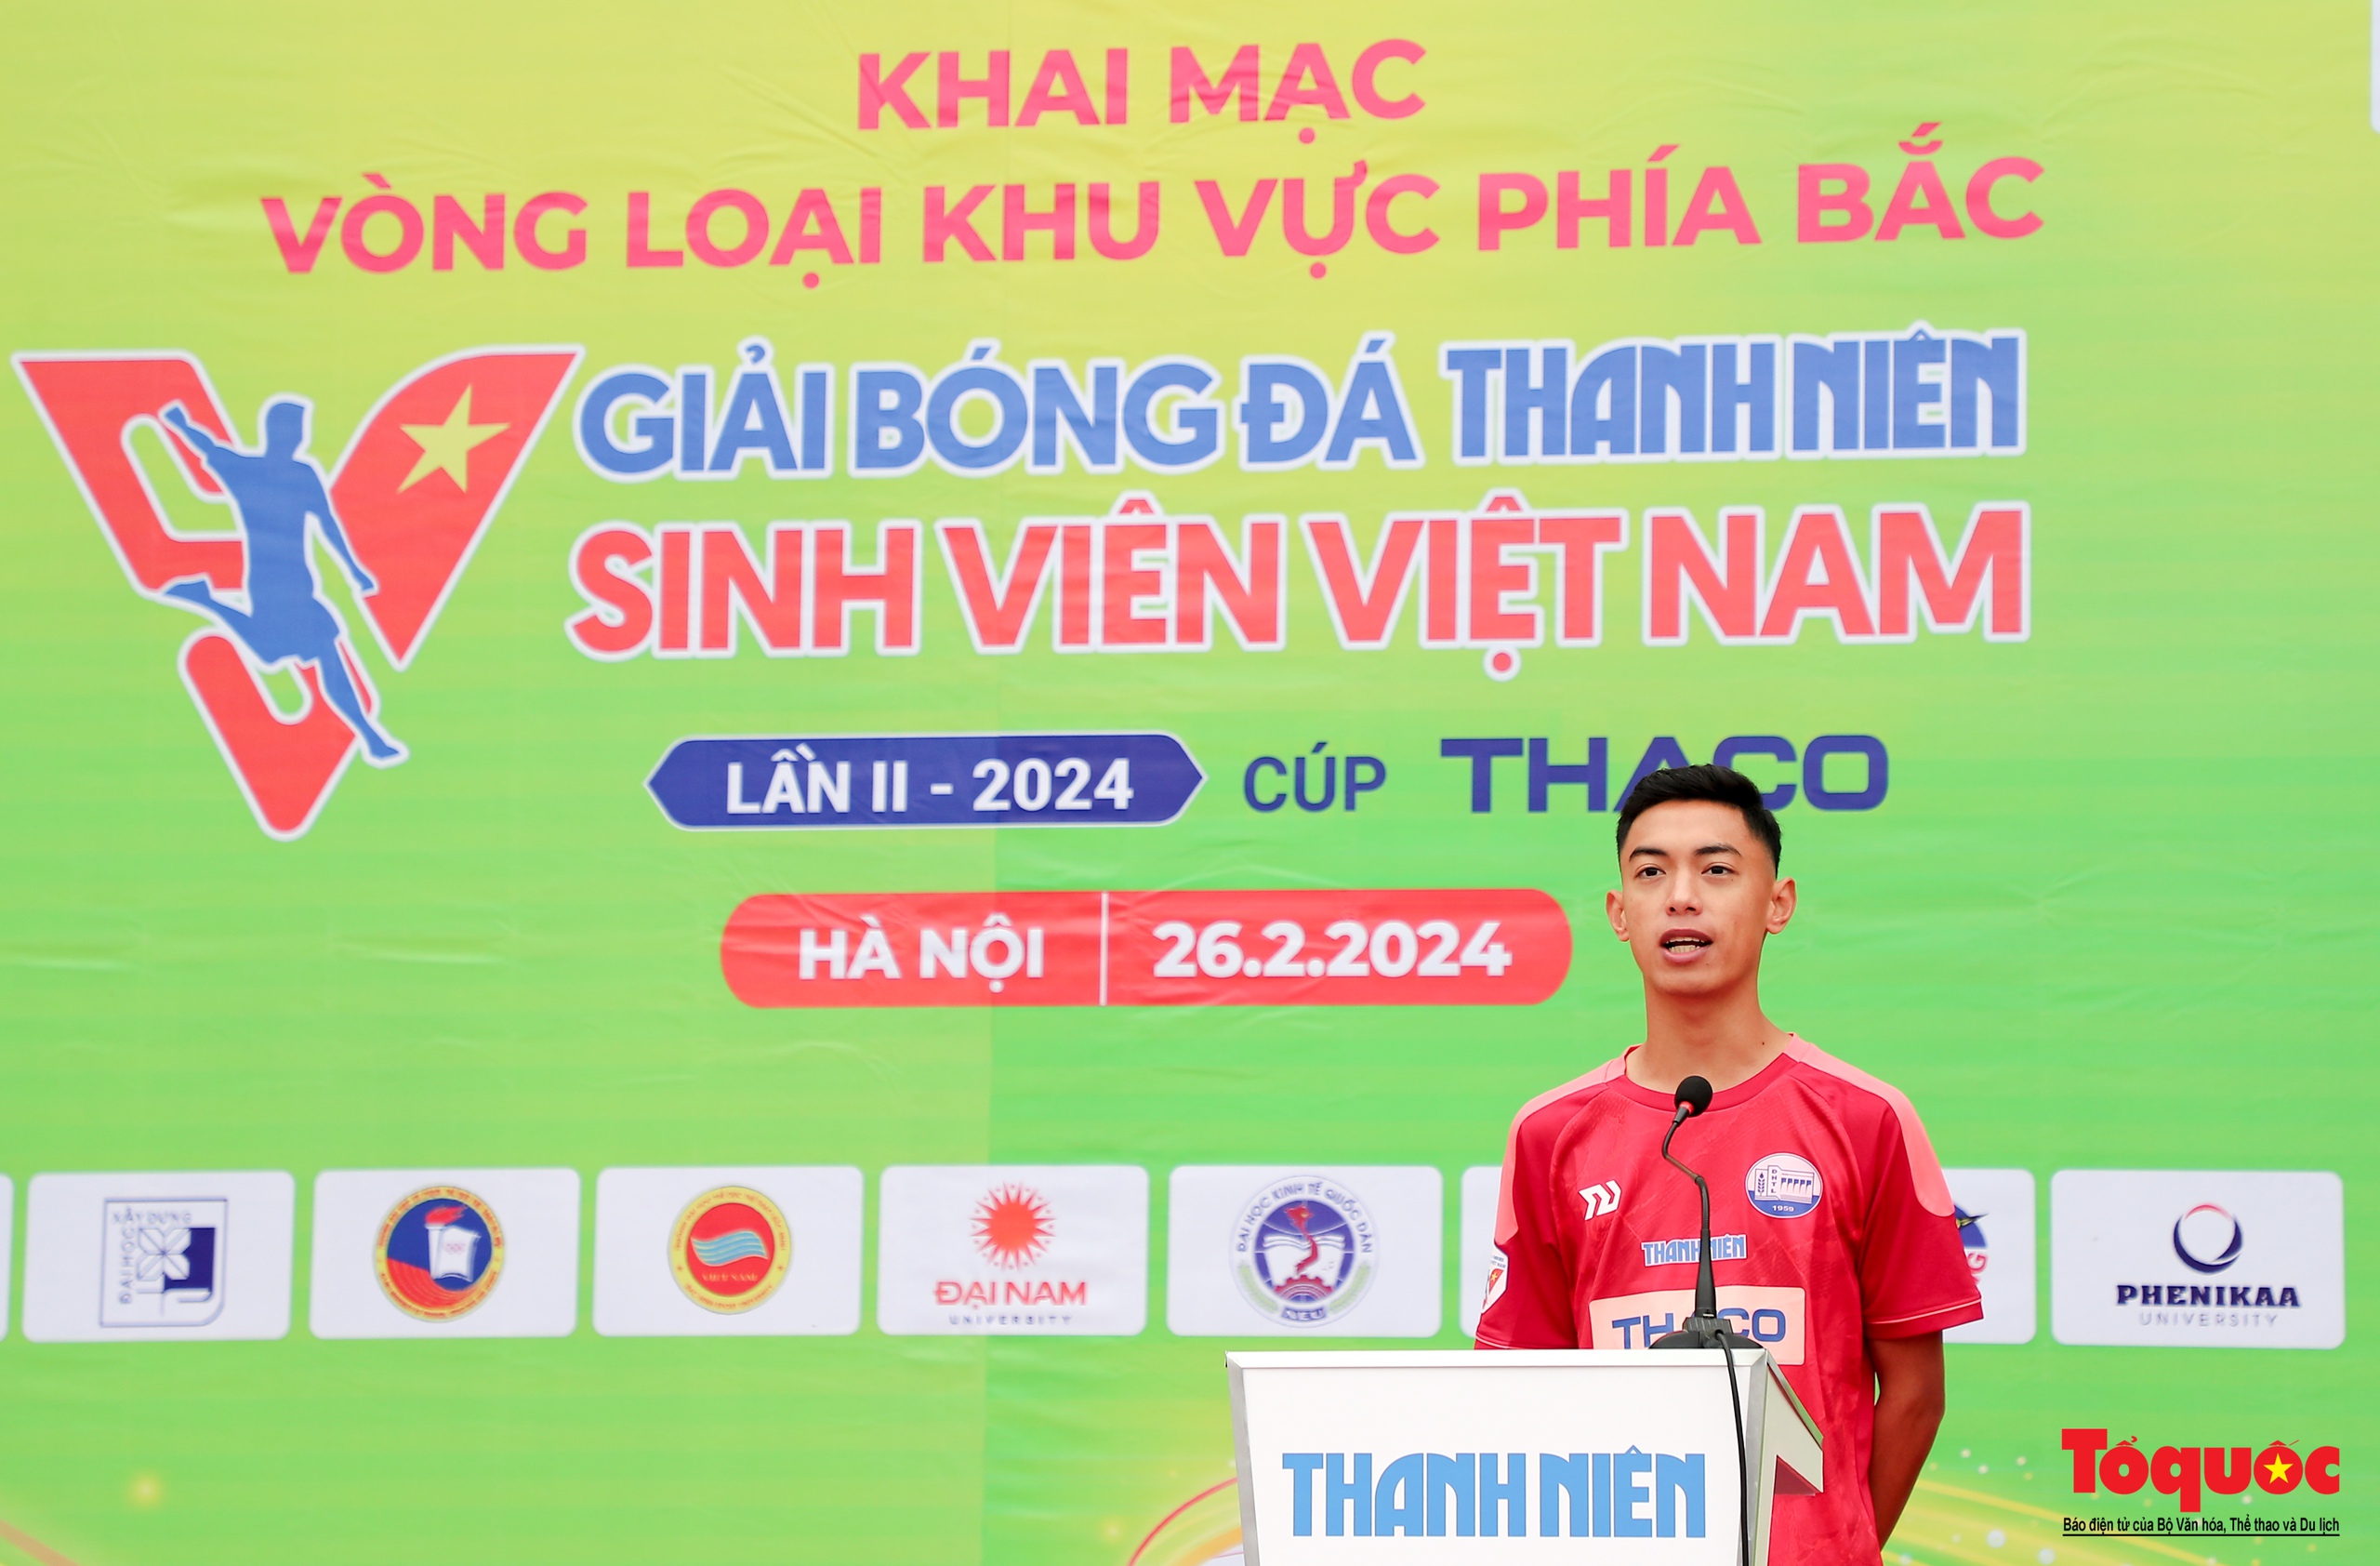 Hà Nội: Khai mạc vòng loại giải bóng đá Thanh Niên sinh viên Việt Nam lần II - 2024 - Ảnh 8.